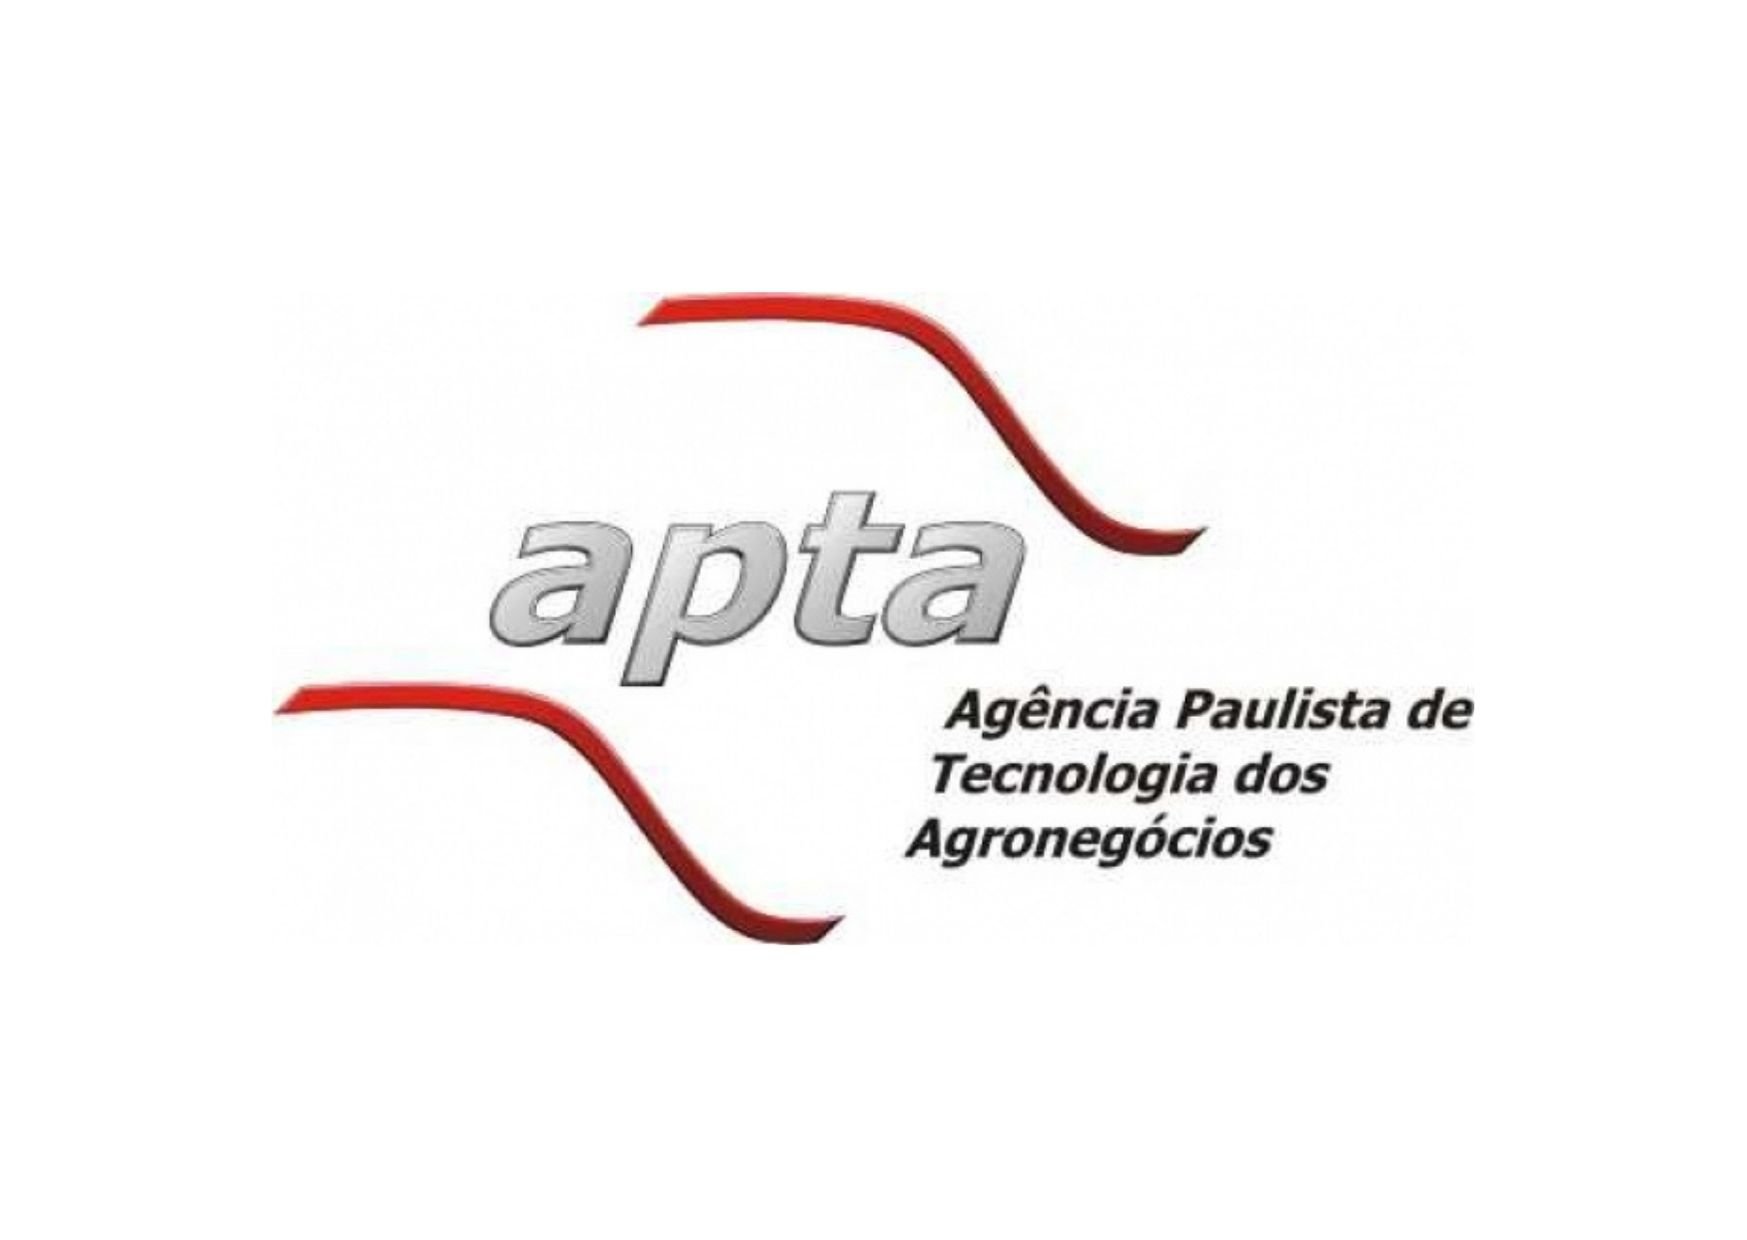 APTA SP - Agência Paulista de Tecnologia dos Agronegócios